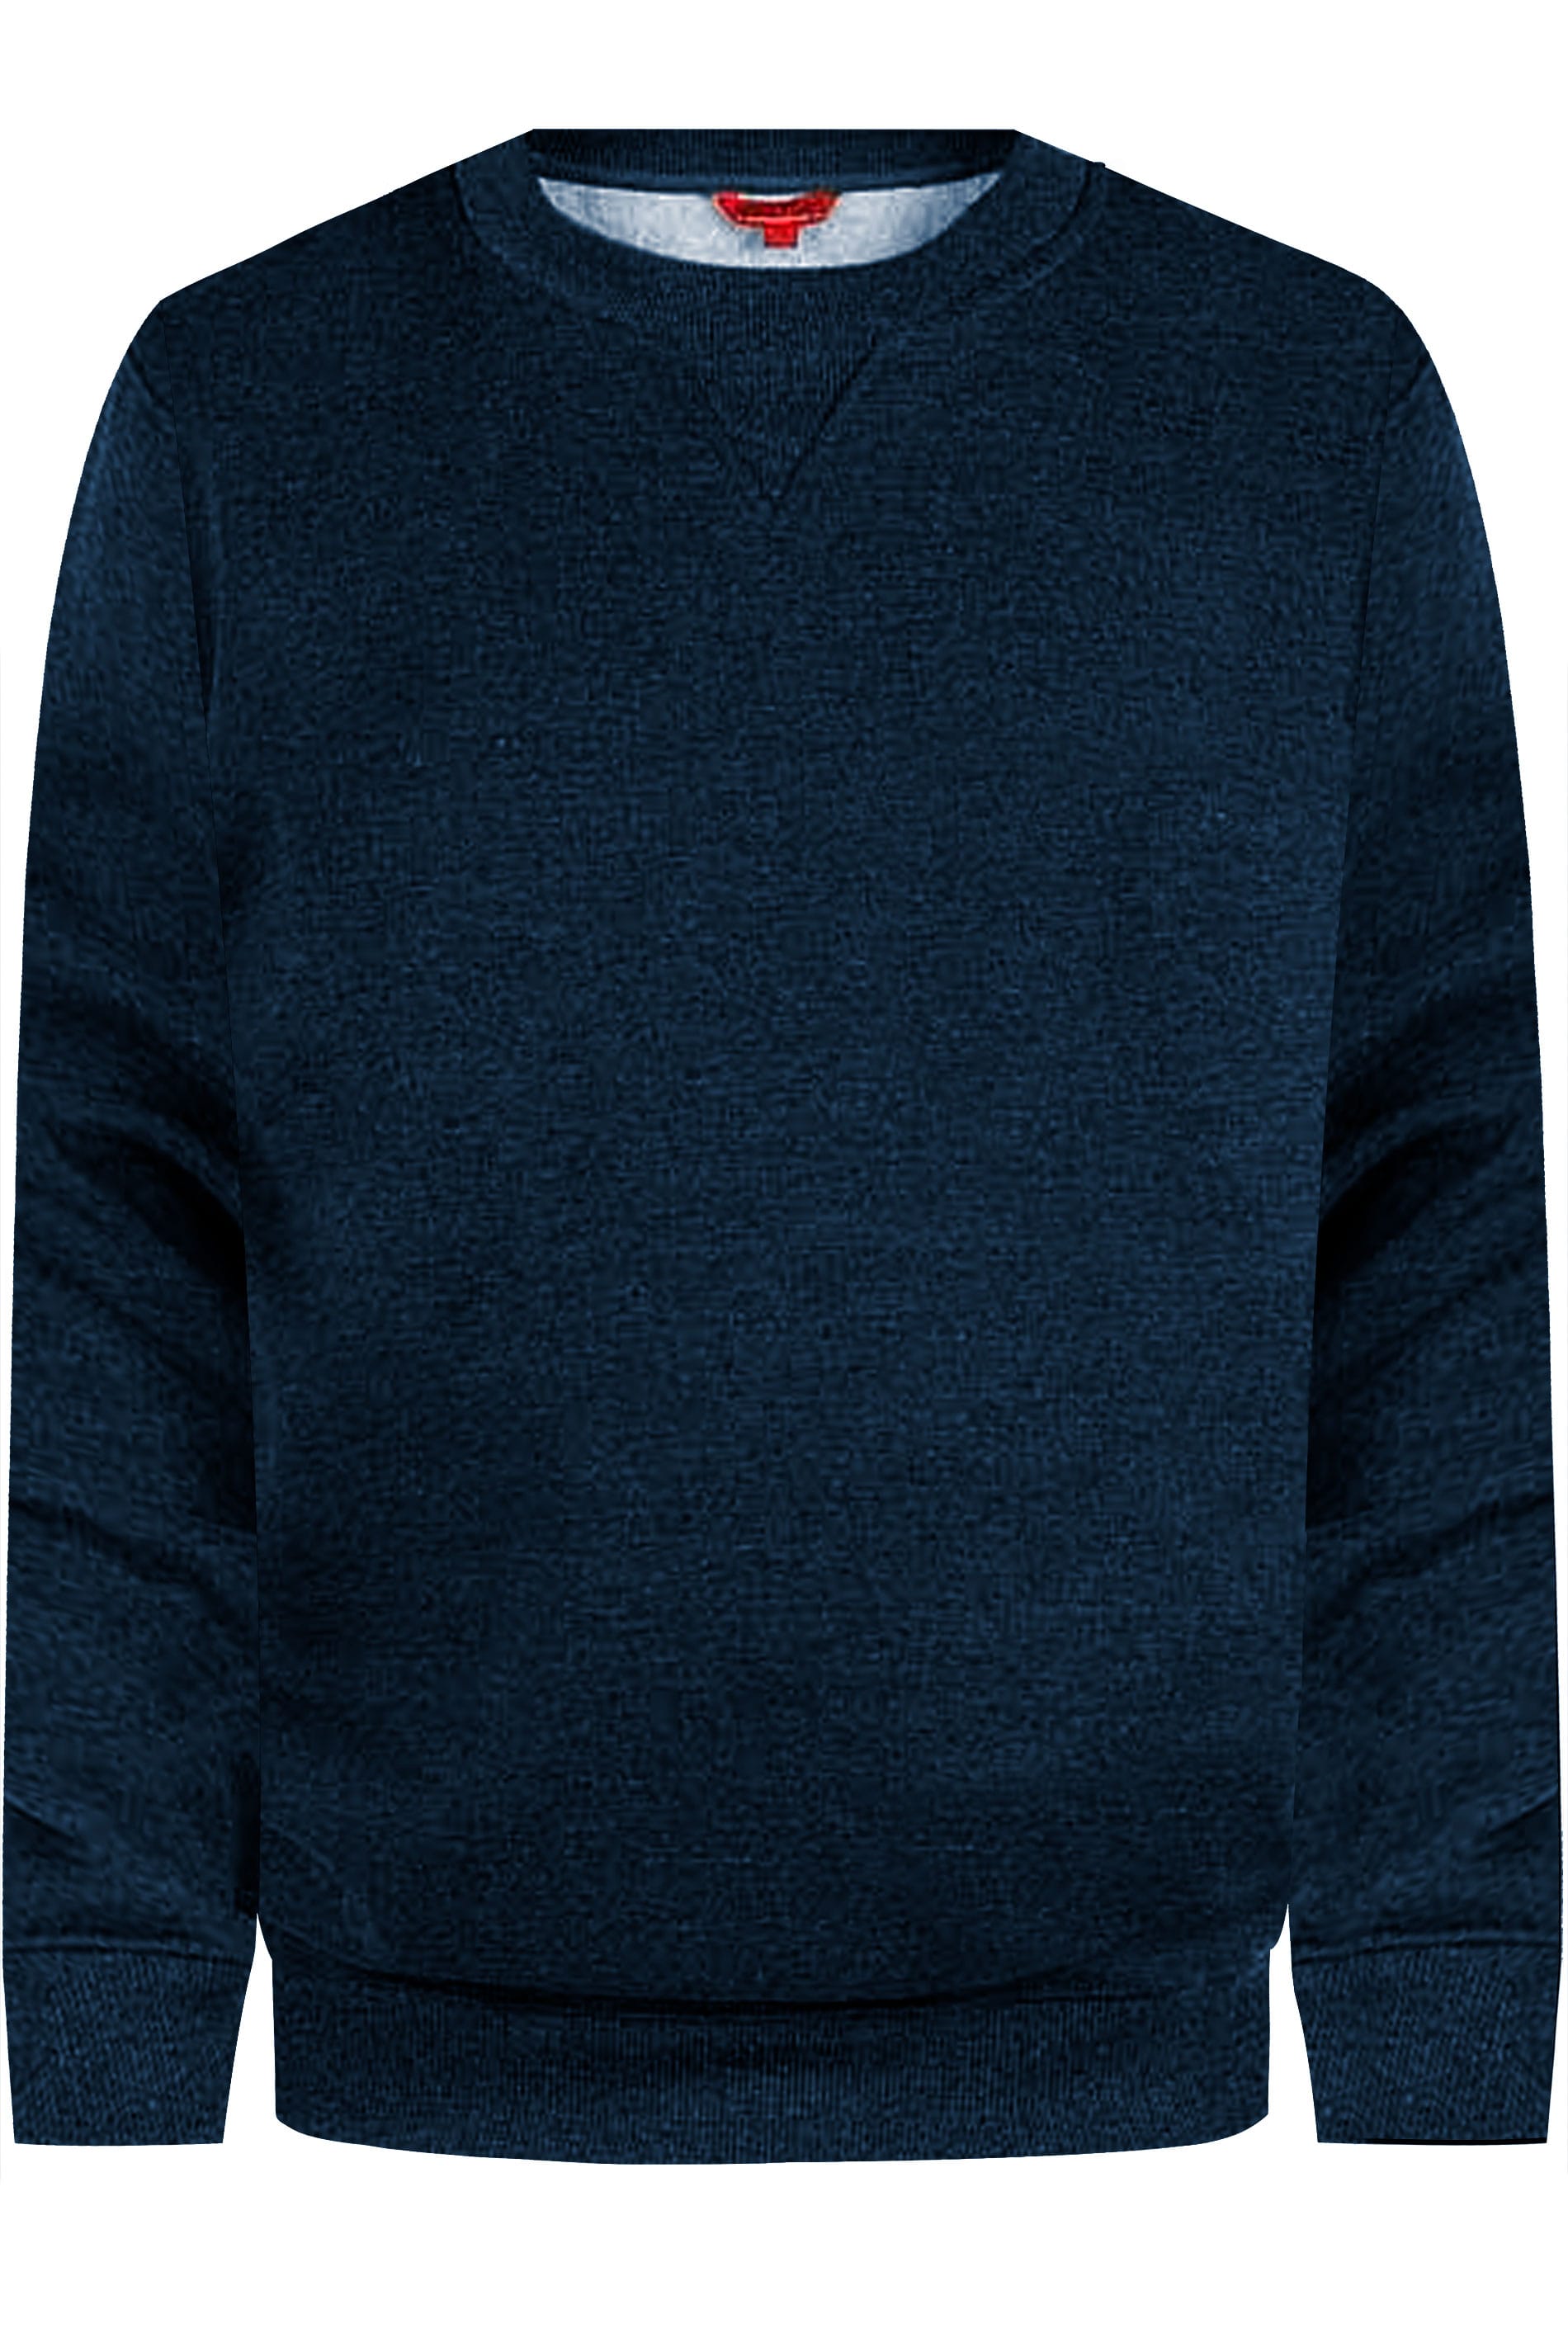 D555 Rockford Navy Blue Sweatshirt | BadRhino 1